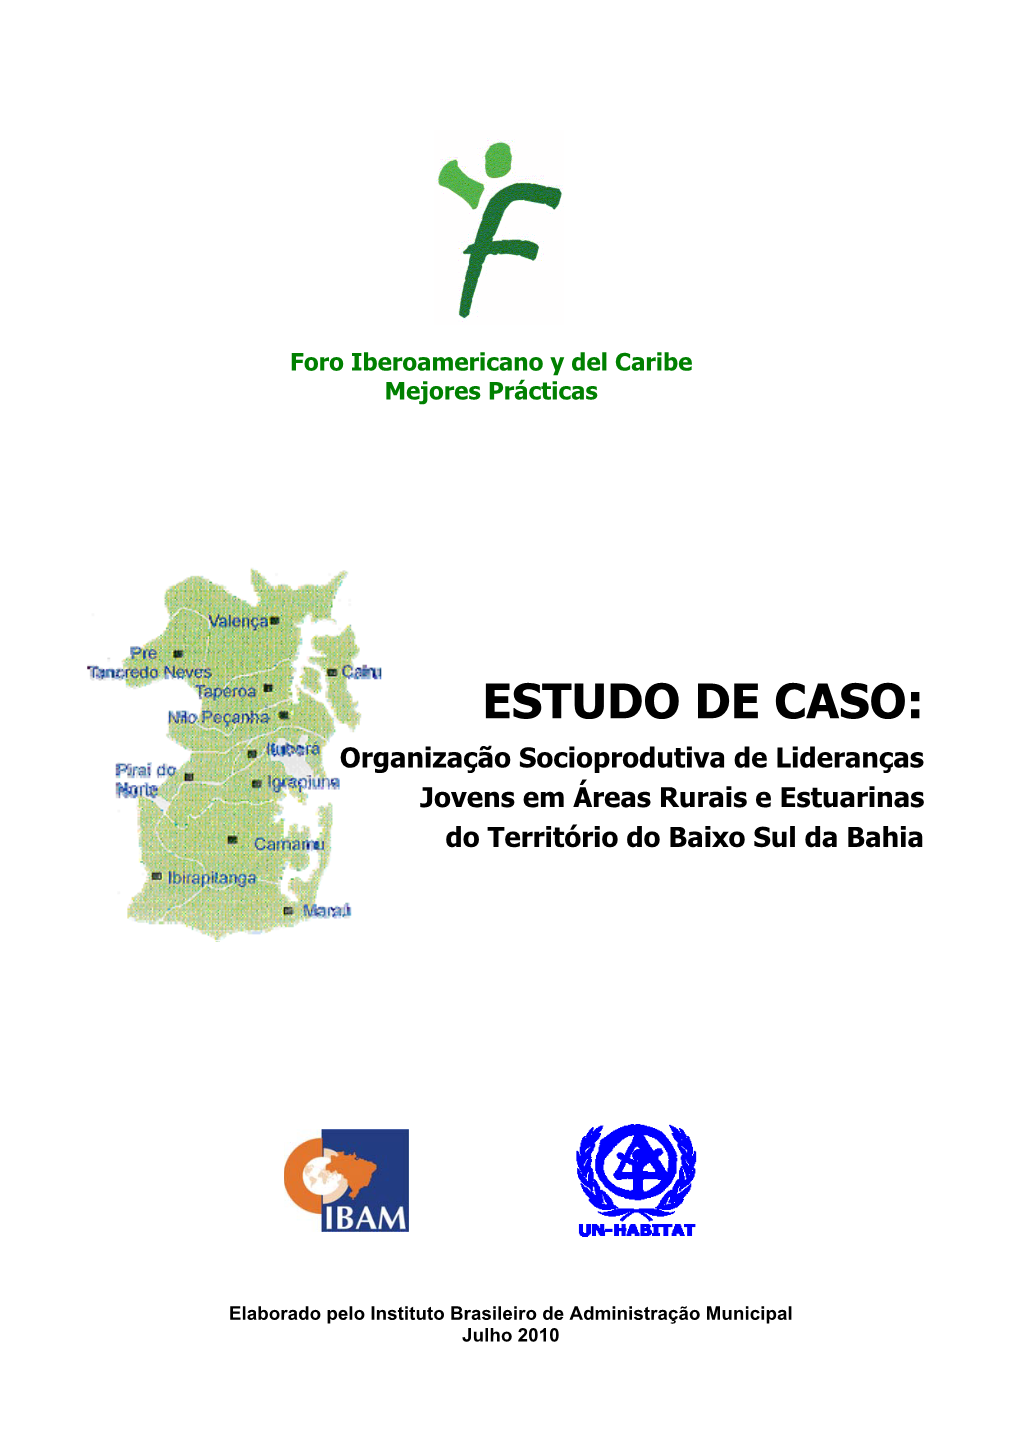 ESTUDO DE CASO: Organização Socioprodutiva De Lideranças Jovens Em Áreas Rurais E Estuarinas Do Território Do Baixo Sul Da Bahia